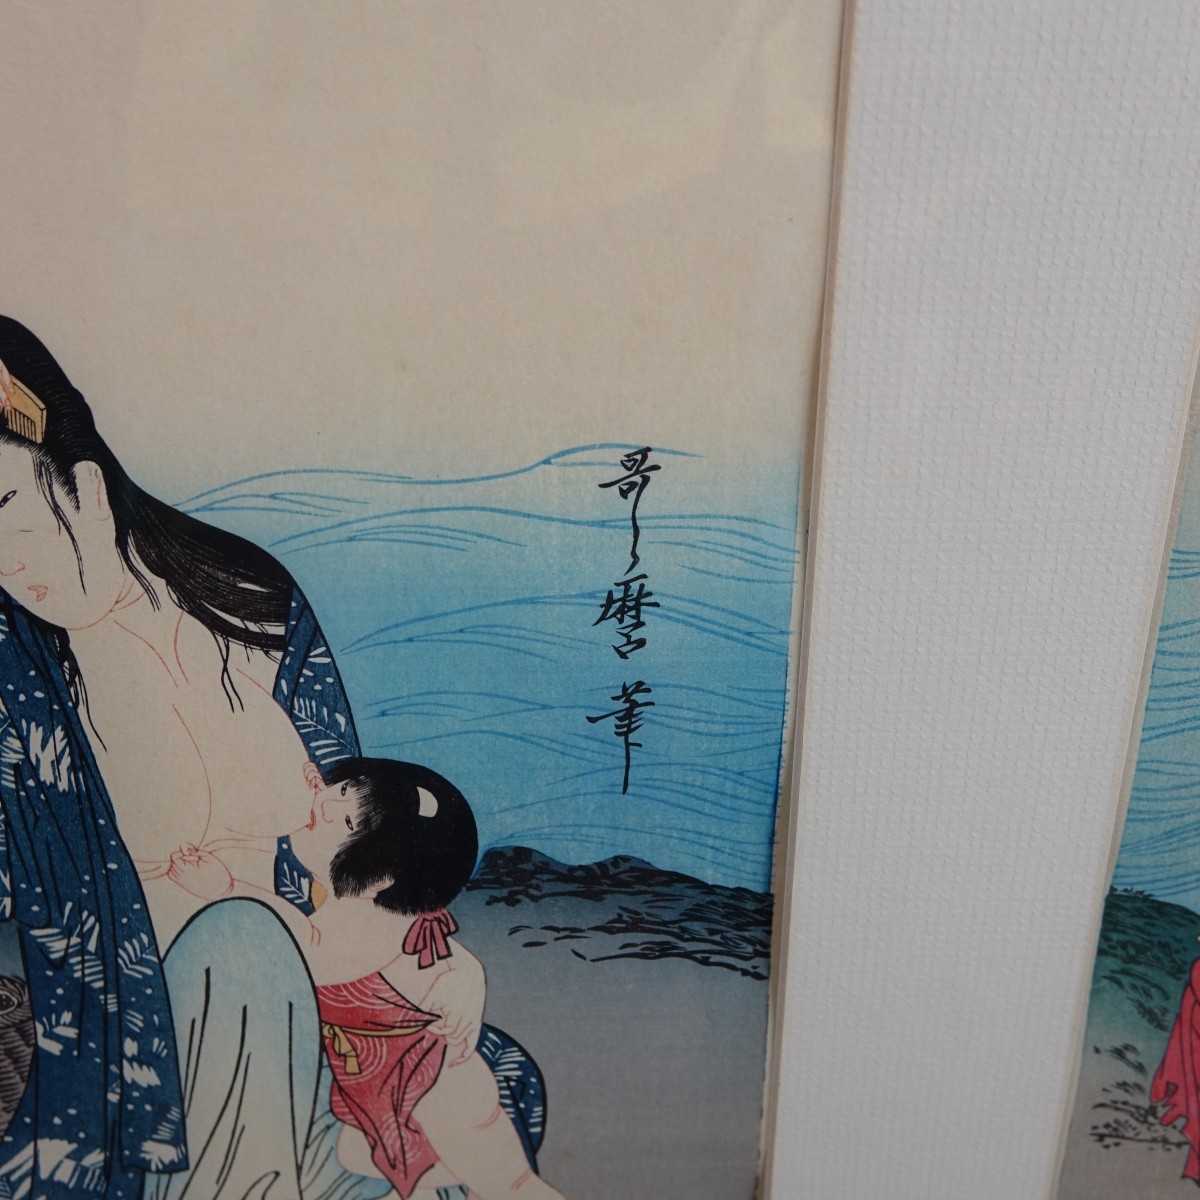 2 After: K Utamaro (1753-1806) Wood Block Prints